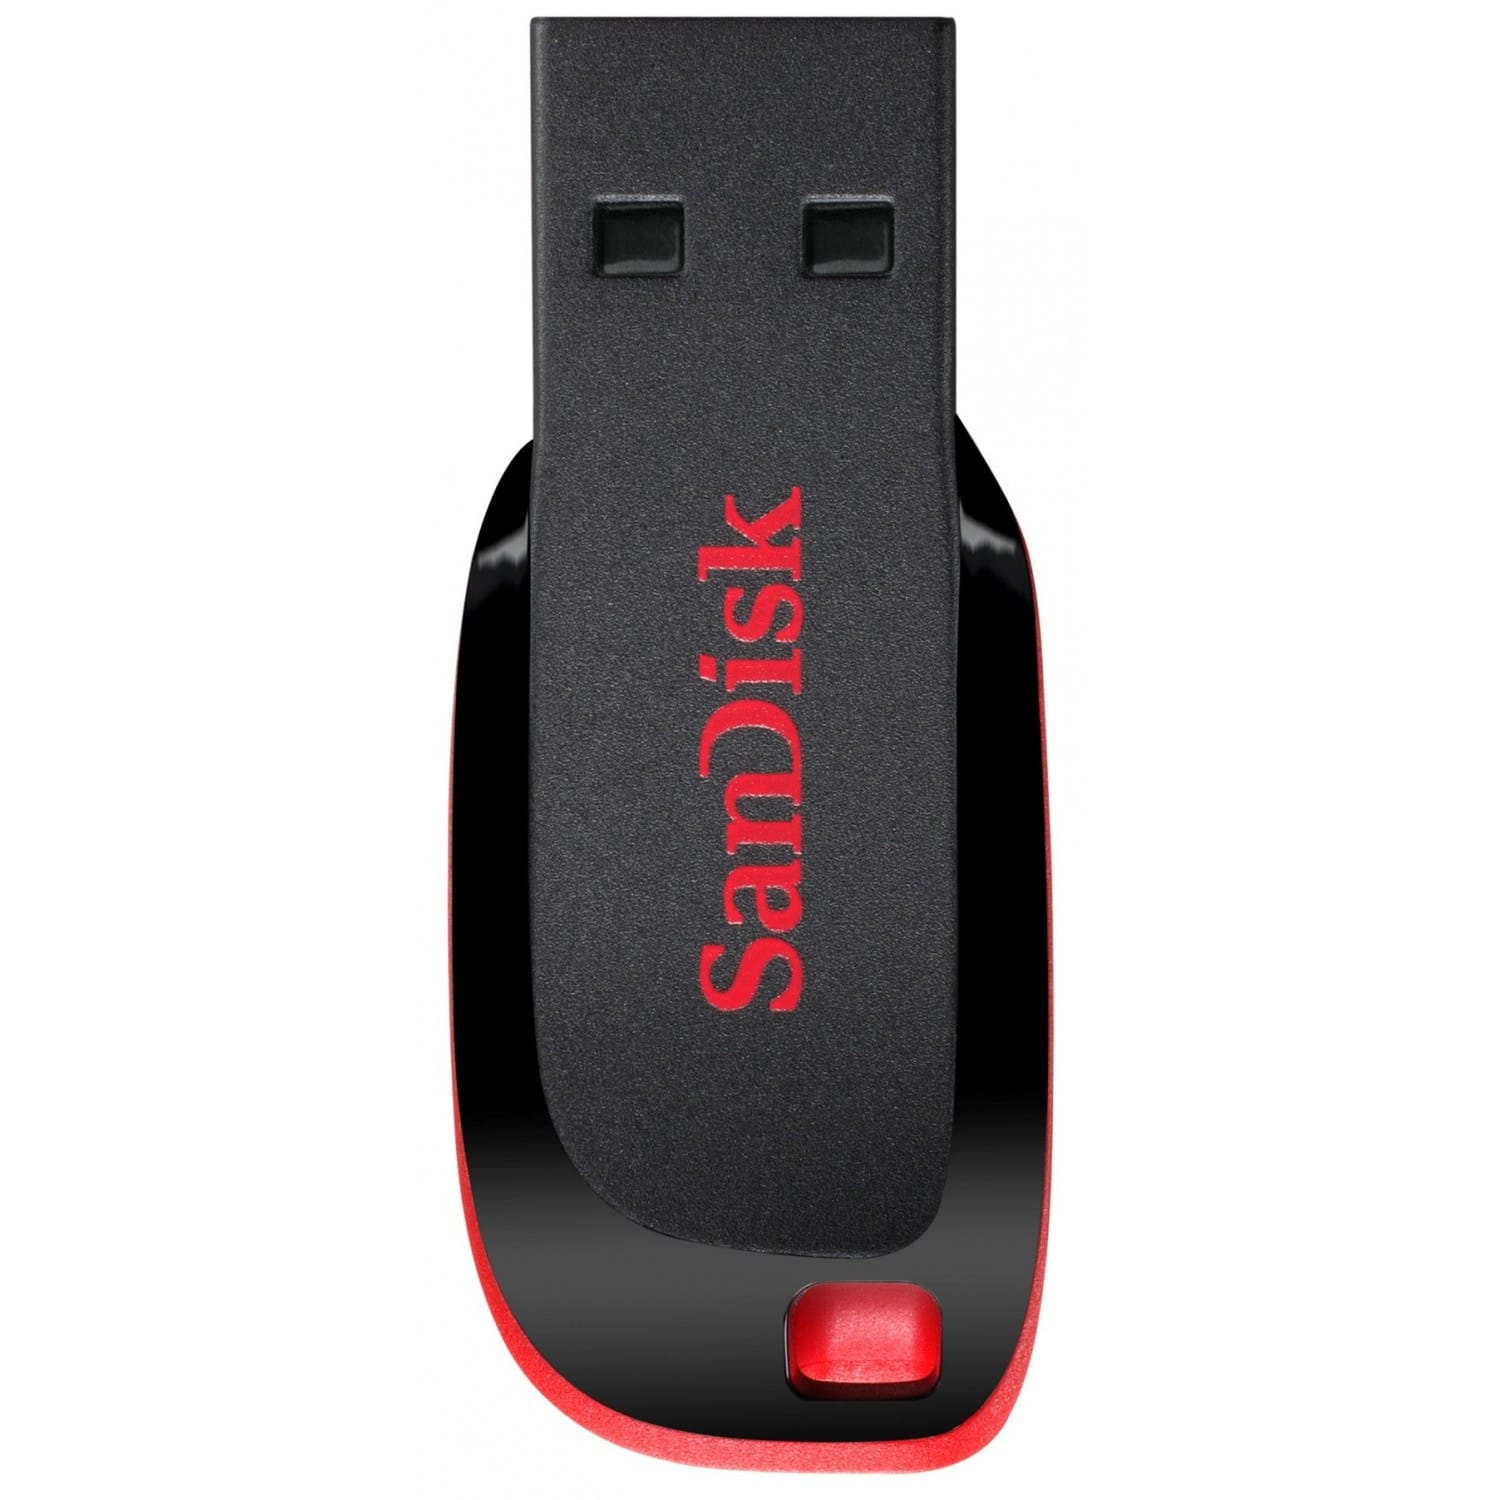 SanDisk Clé USB - 32Go - CZ50